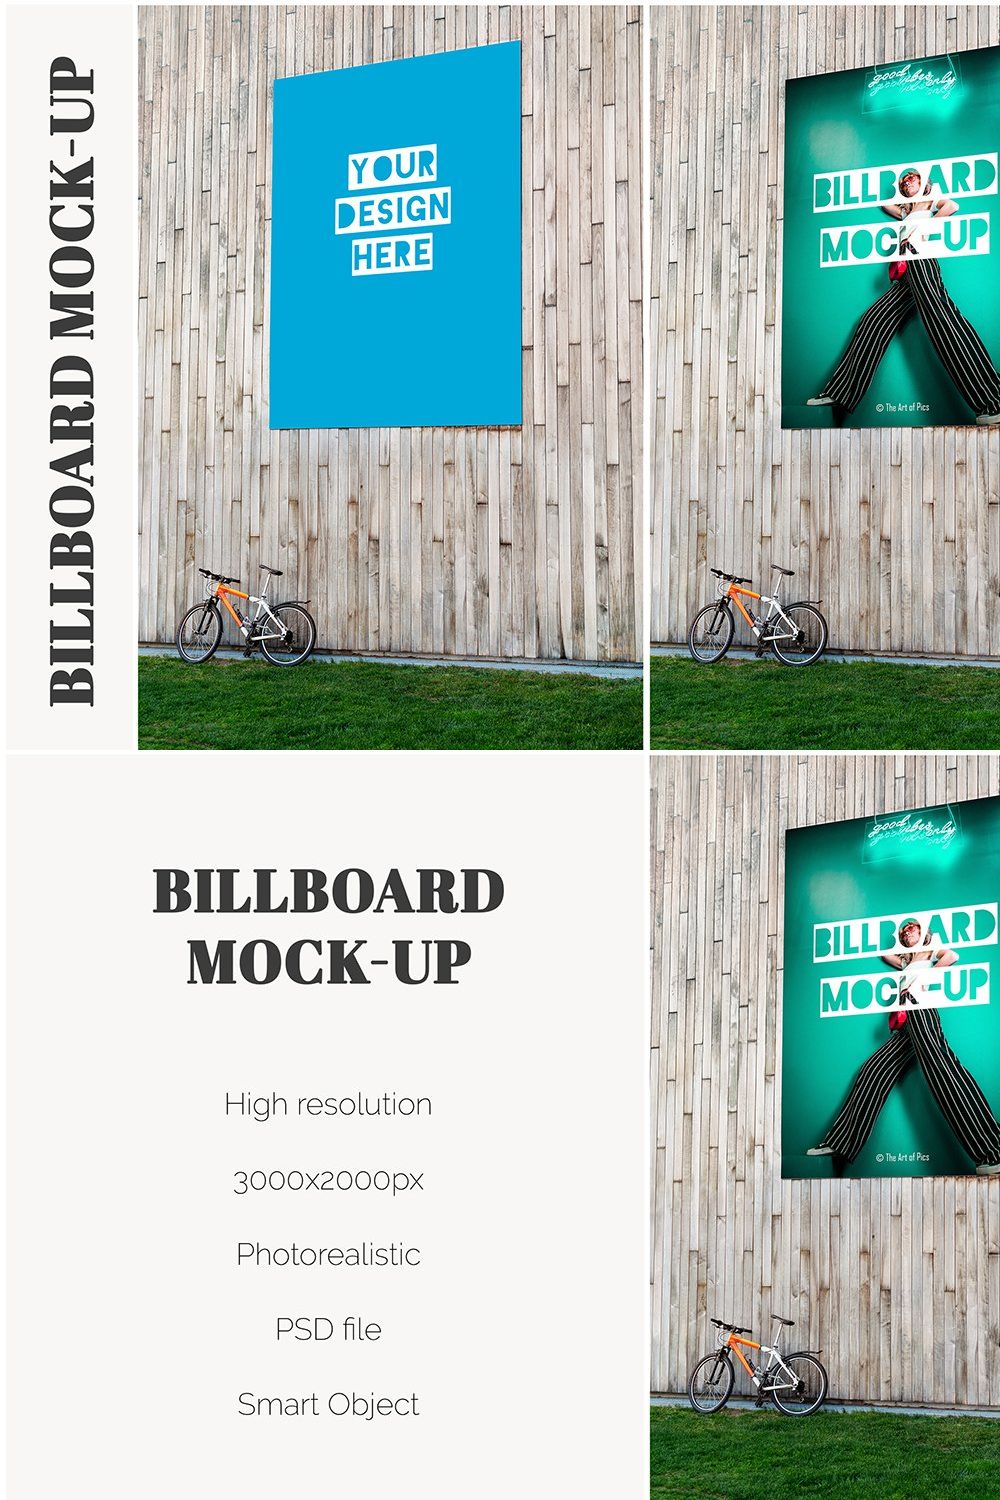 Huge Billboard Mock-up pinterest preview image.